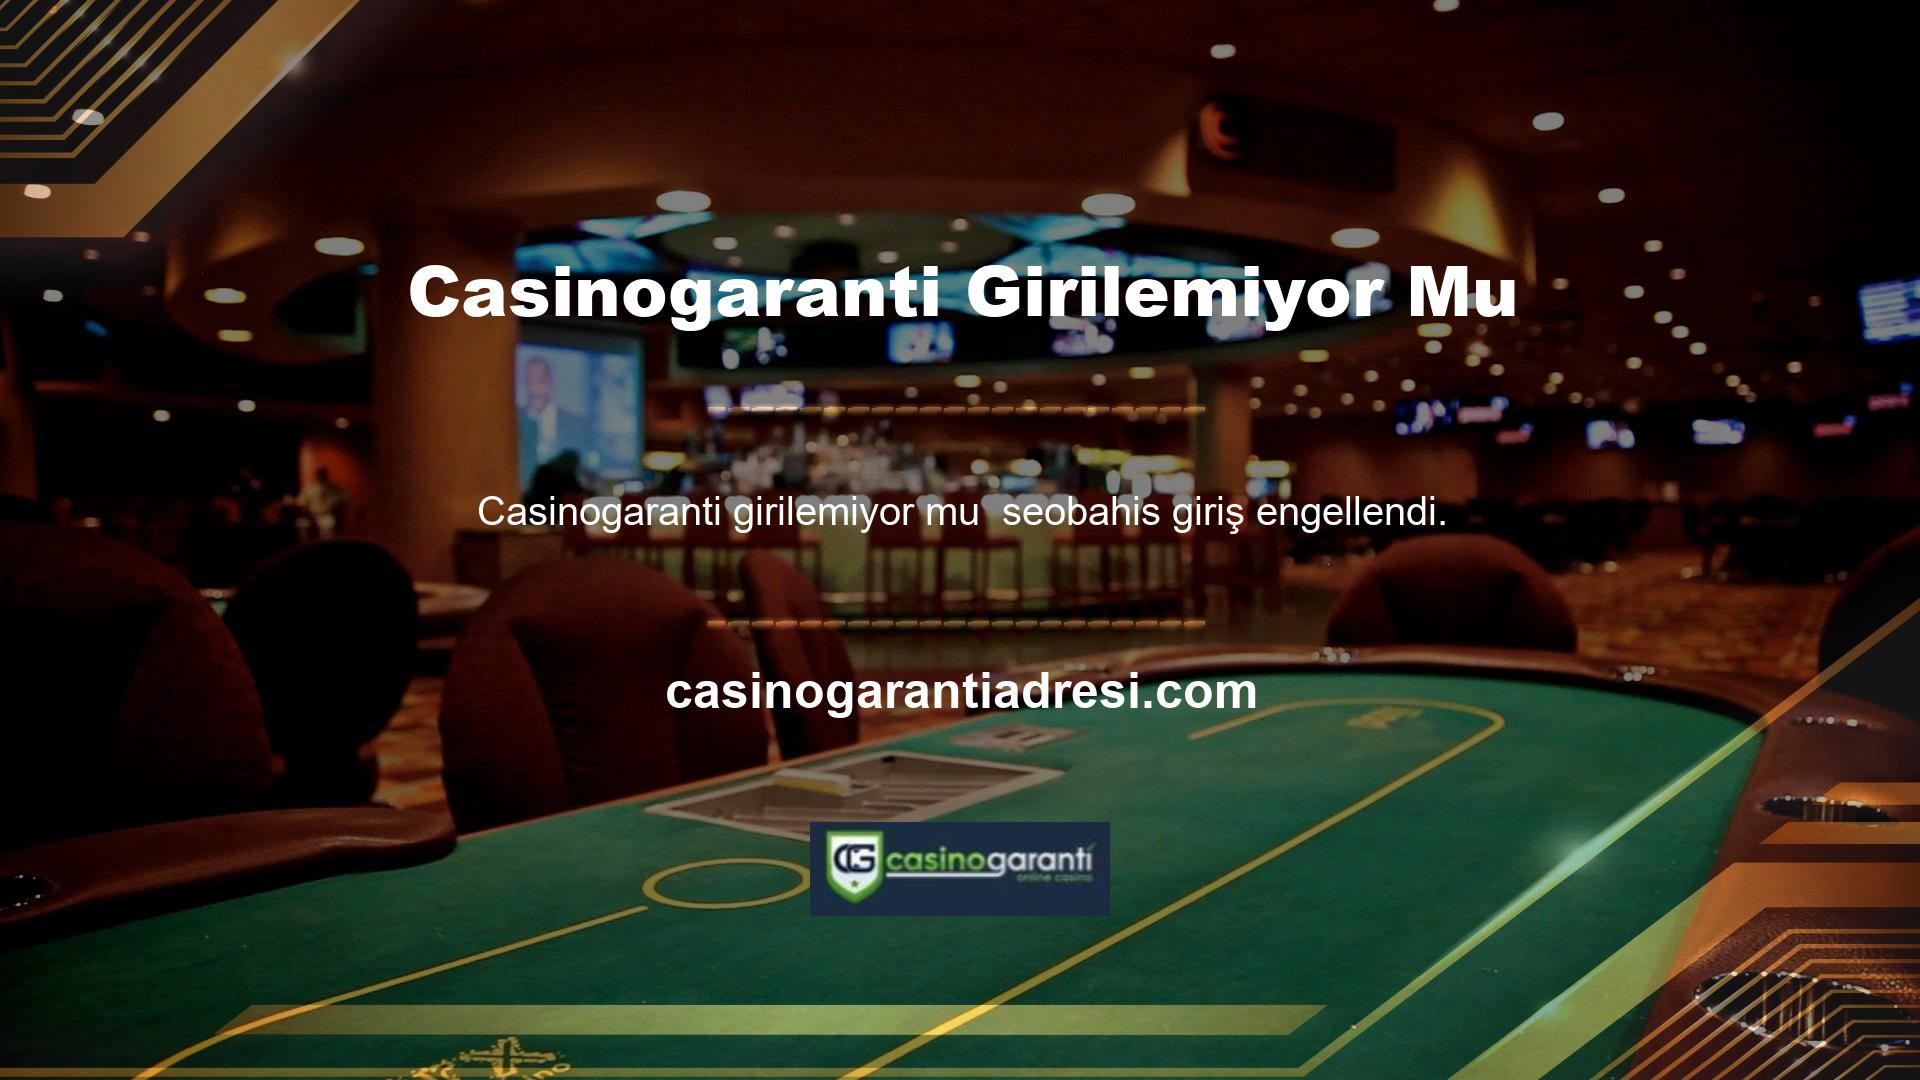 Casinogaranti artık halka açık değil mi? Kullanıcı bu soruyu sorduğunda siteye erişemez